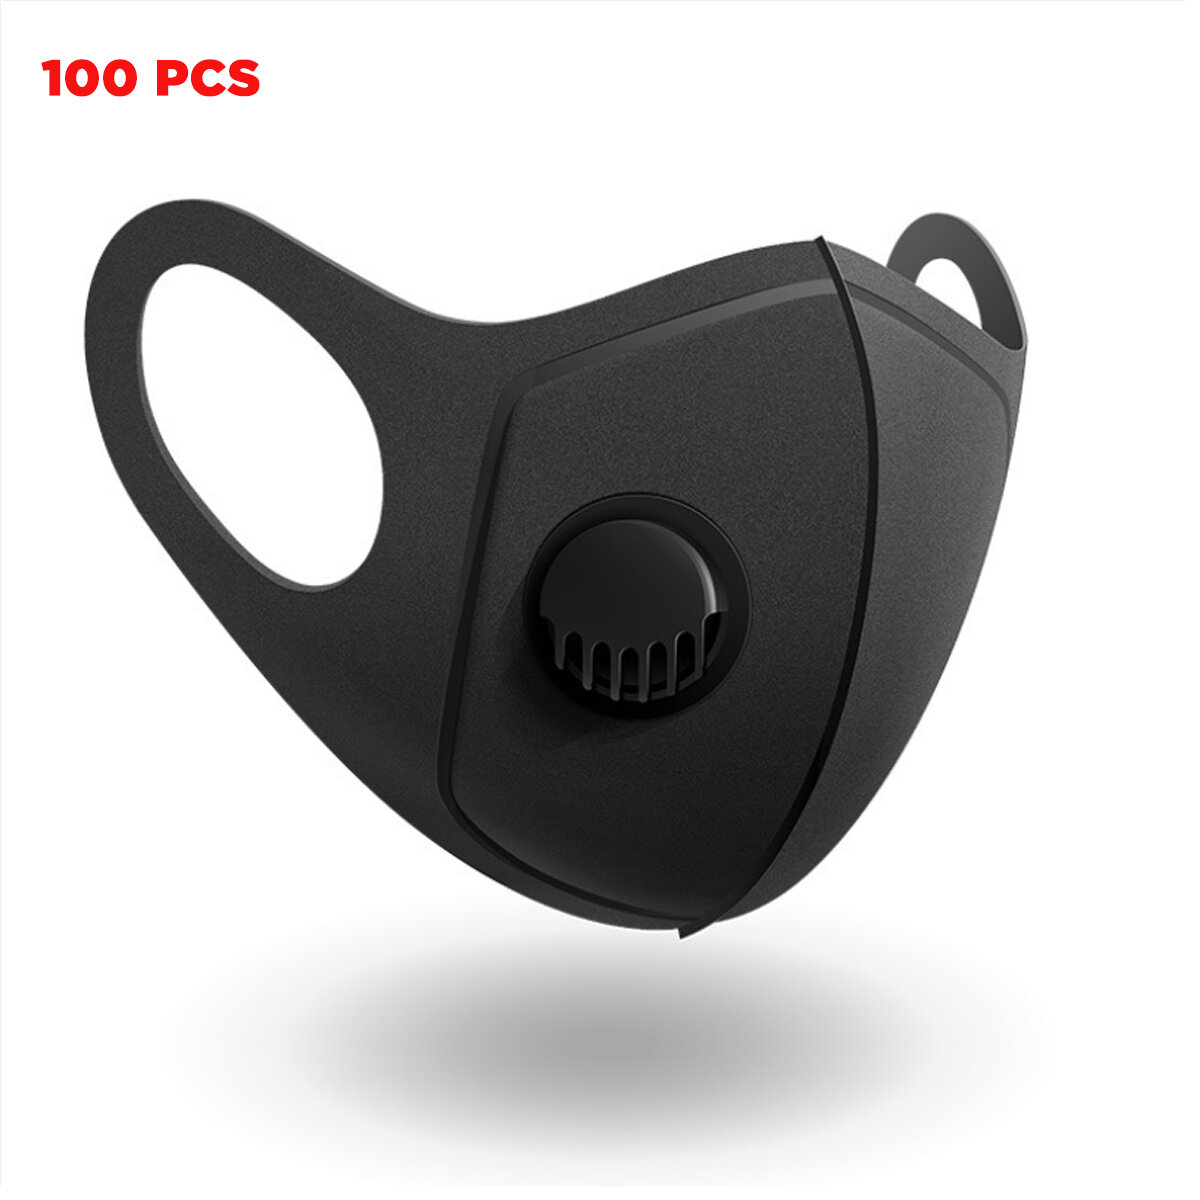 100 peças de máscaras faciais PM2.5 para camping, viagens, ciclismo com filtro de três camadas, respiráveis, anti-poeira, máscara de boca